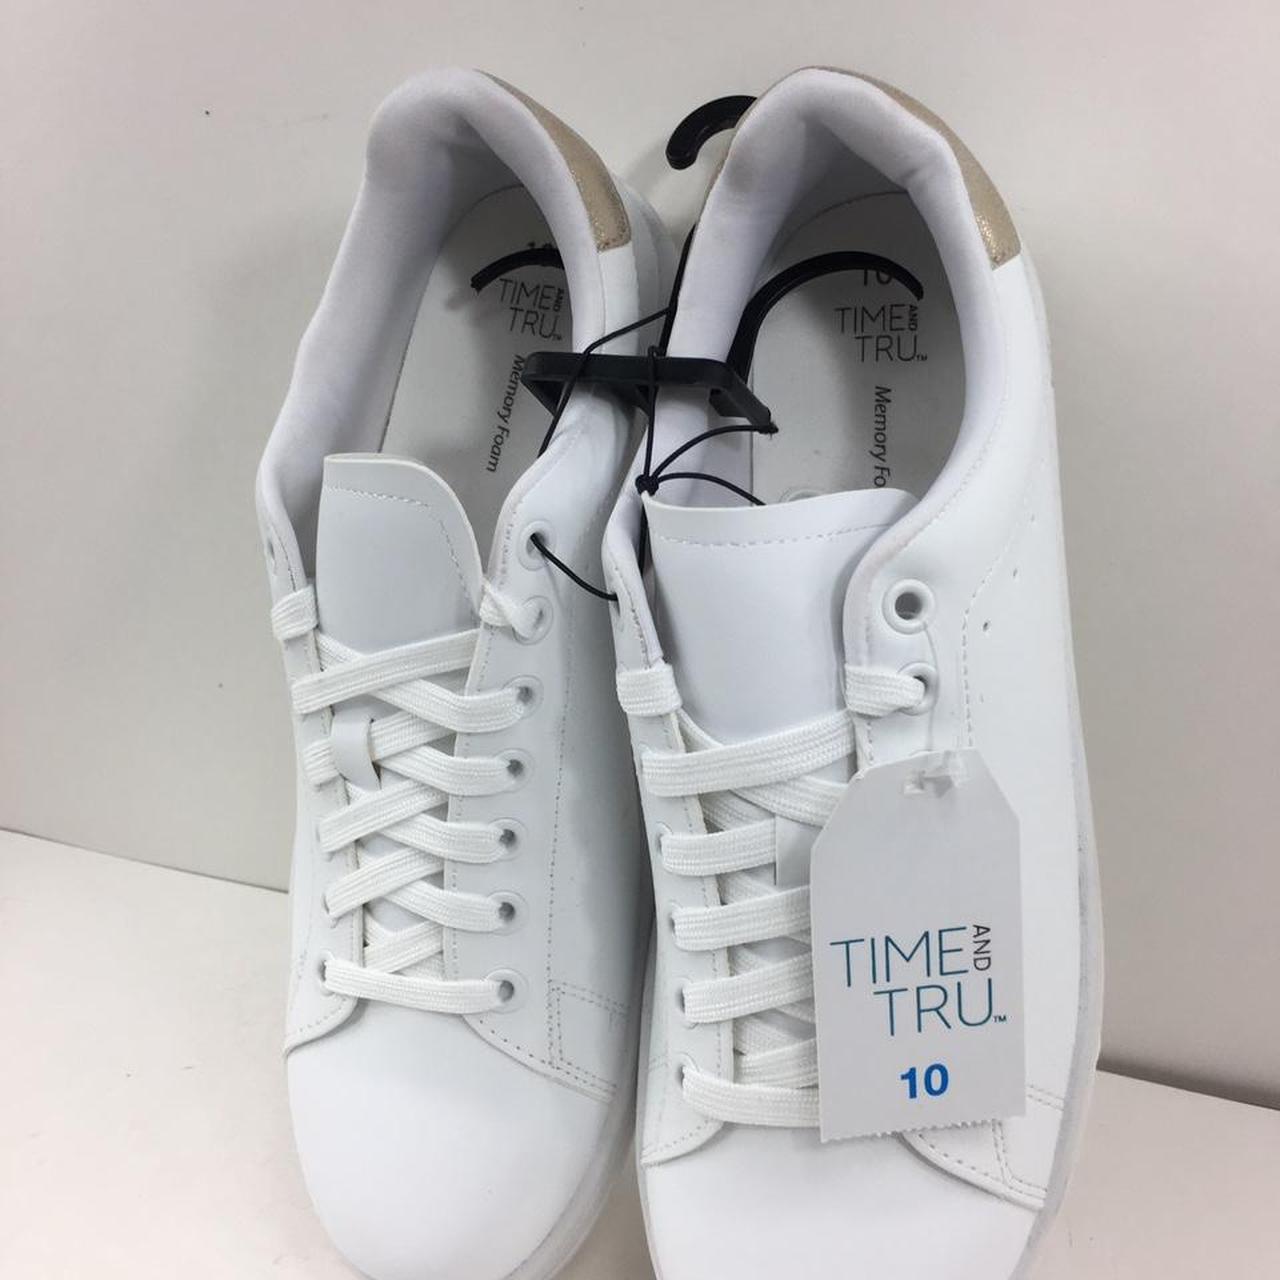 Time and Tru Fashion Sneakers | Mercari